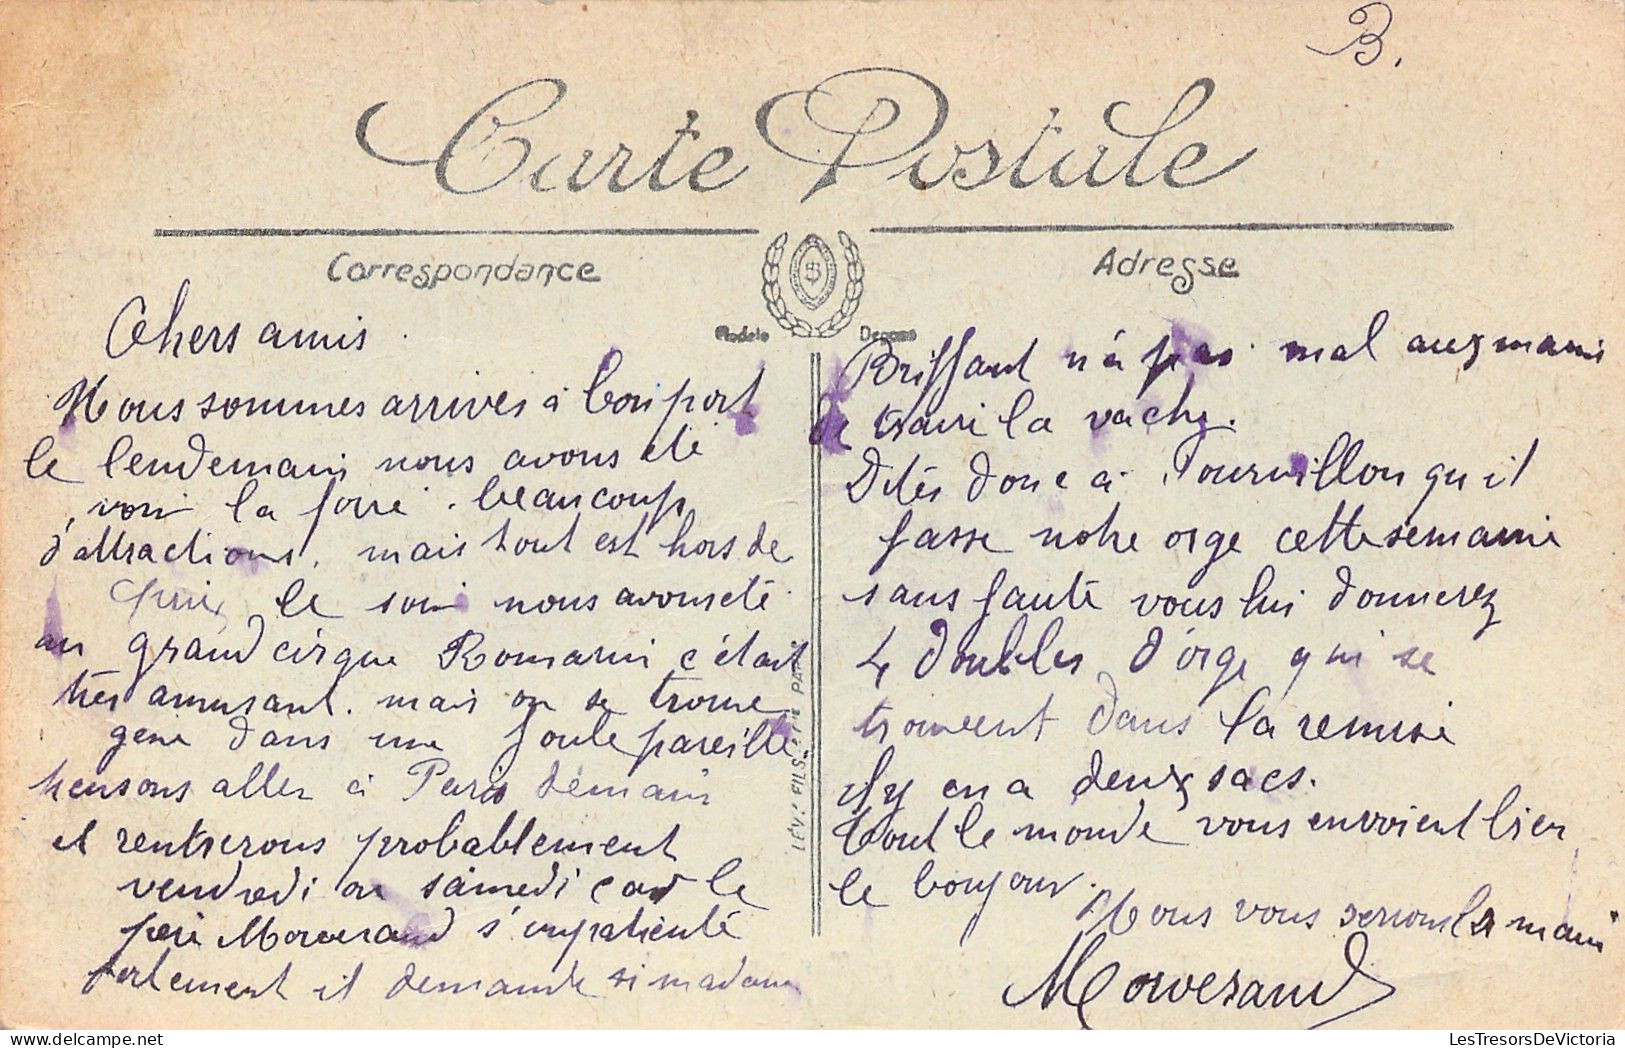 FRANCE - Montereau - L'hotel De Ville - Animé - Carte Postale Ancienne - - Montereau